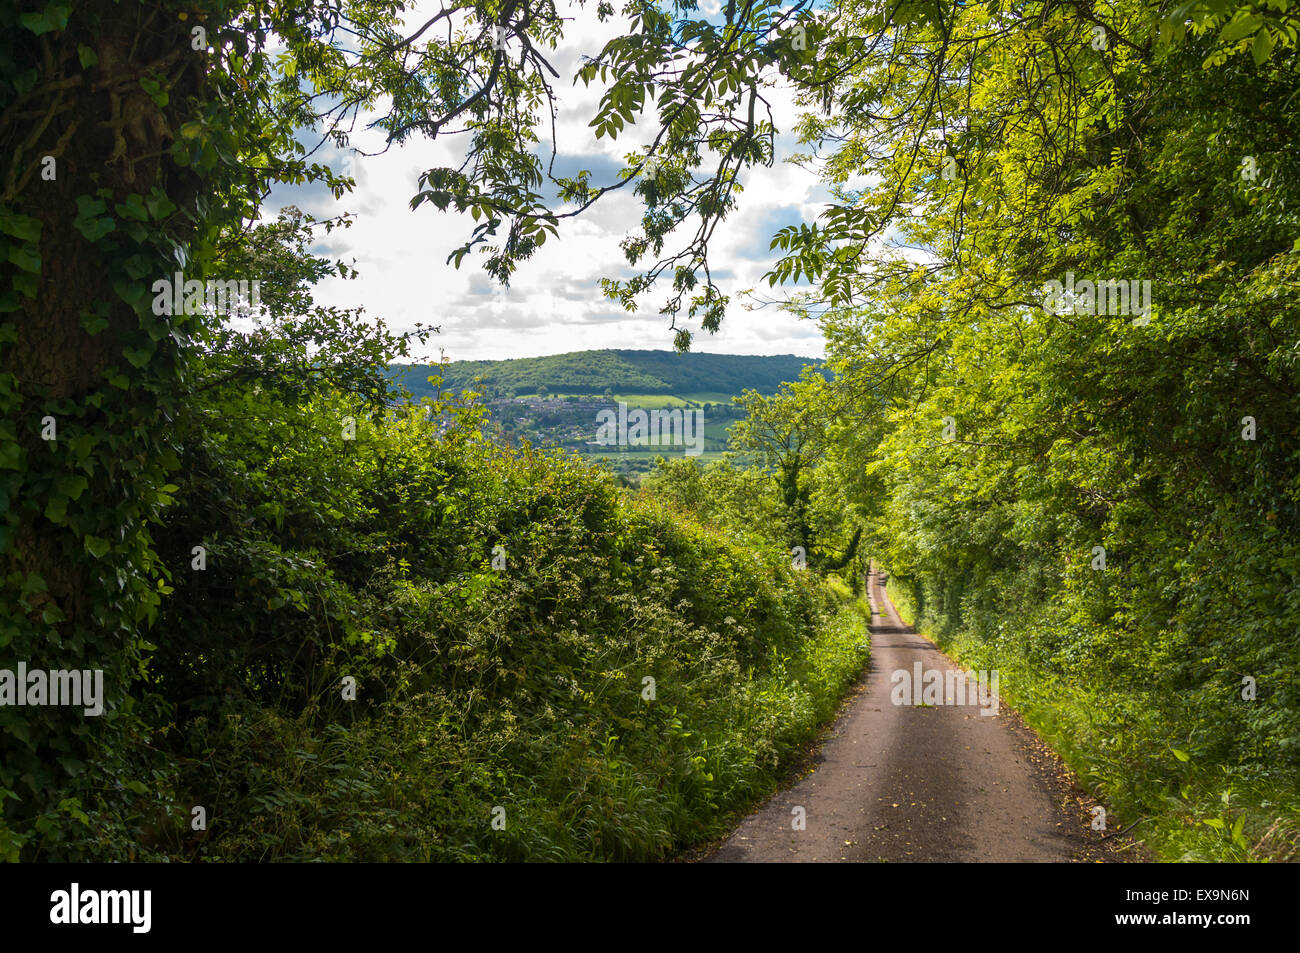 Countryside rural lane road in Somerset, England, UK Stock Photo